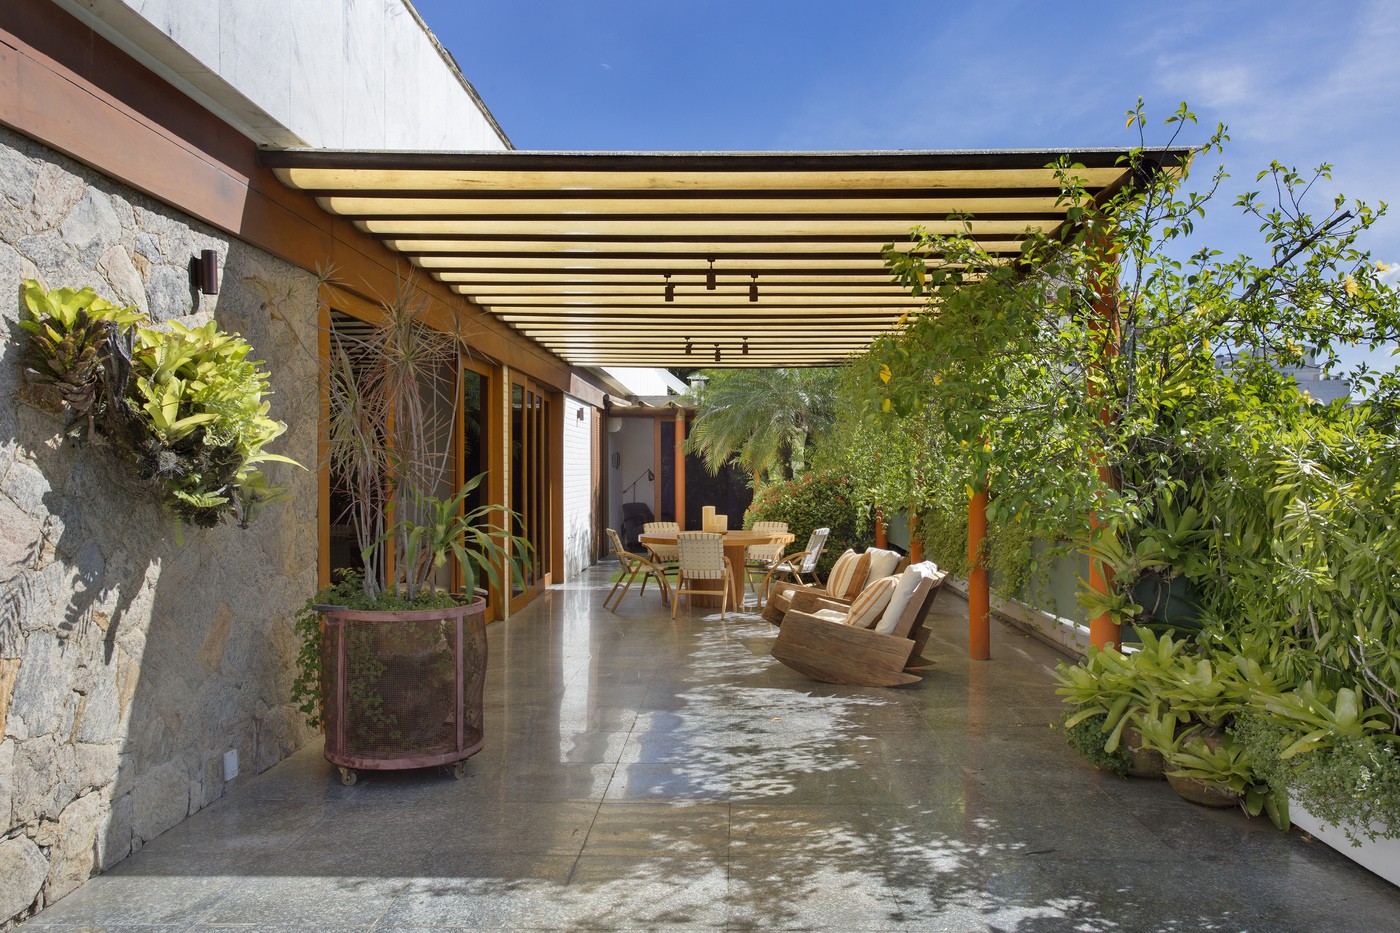 Décor do dia: terraço reúne jardim, piscina e área gourmet no mesmo espaço (Foto: Divulgação)